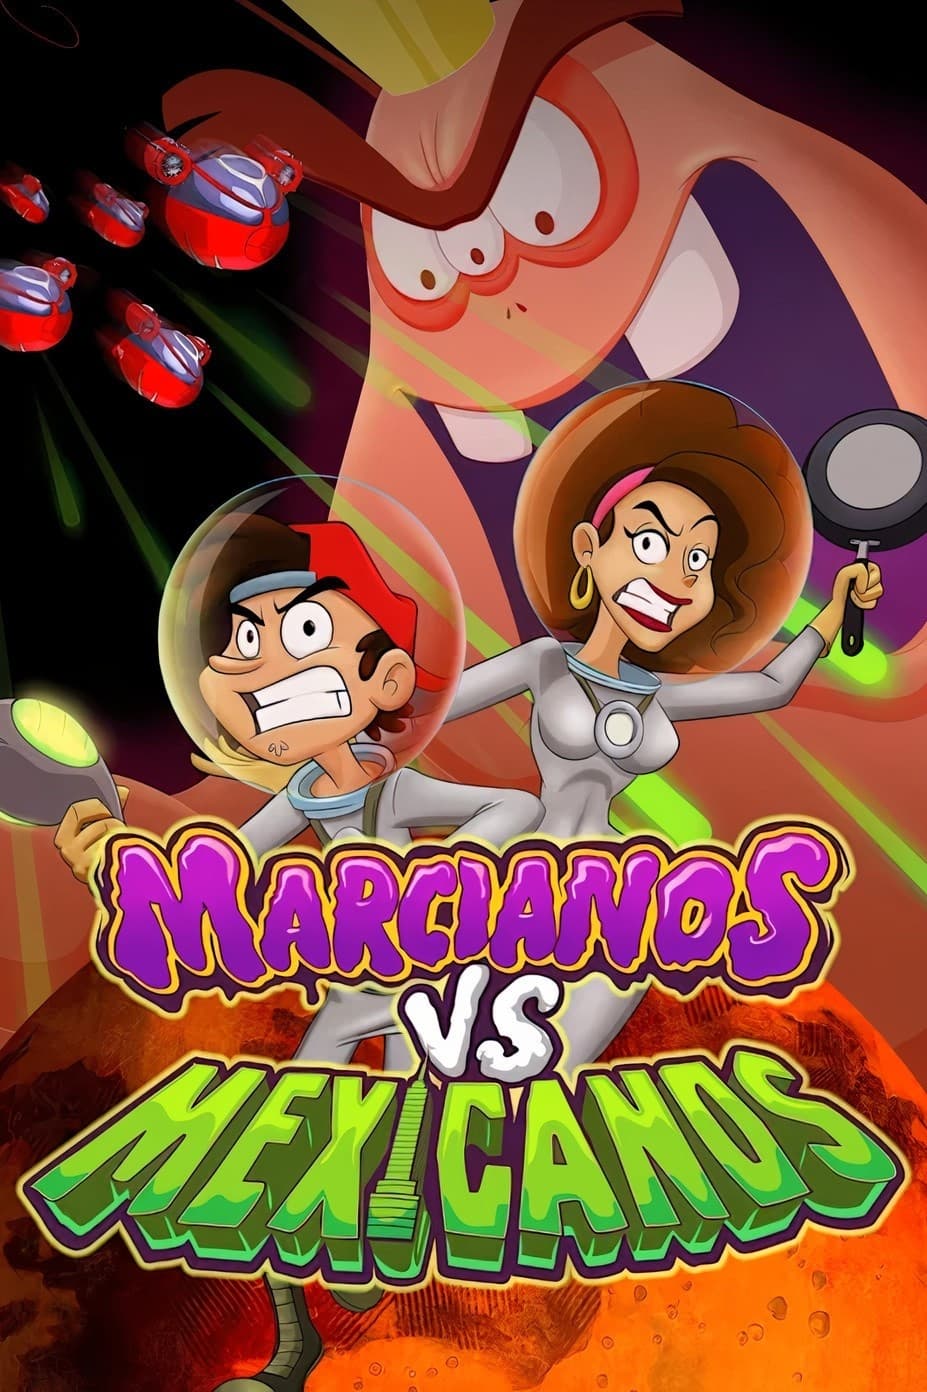 Martians vs Mexicans (2018)